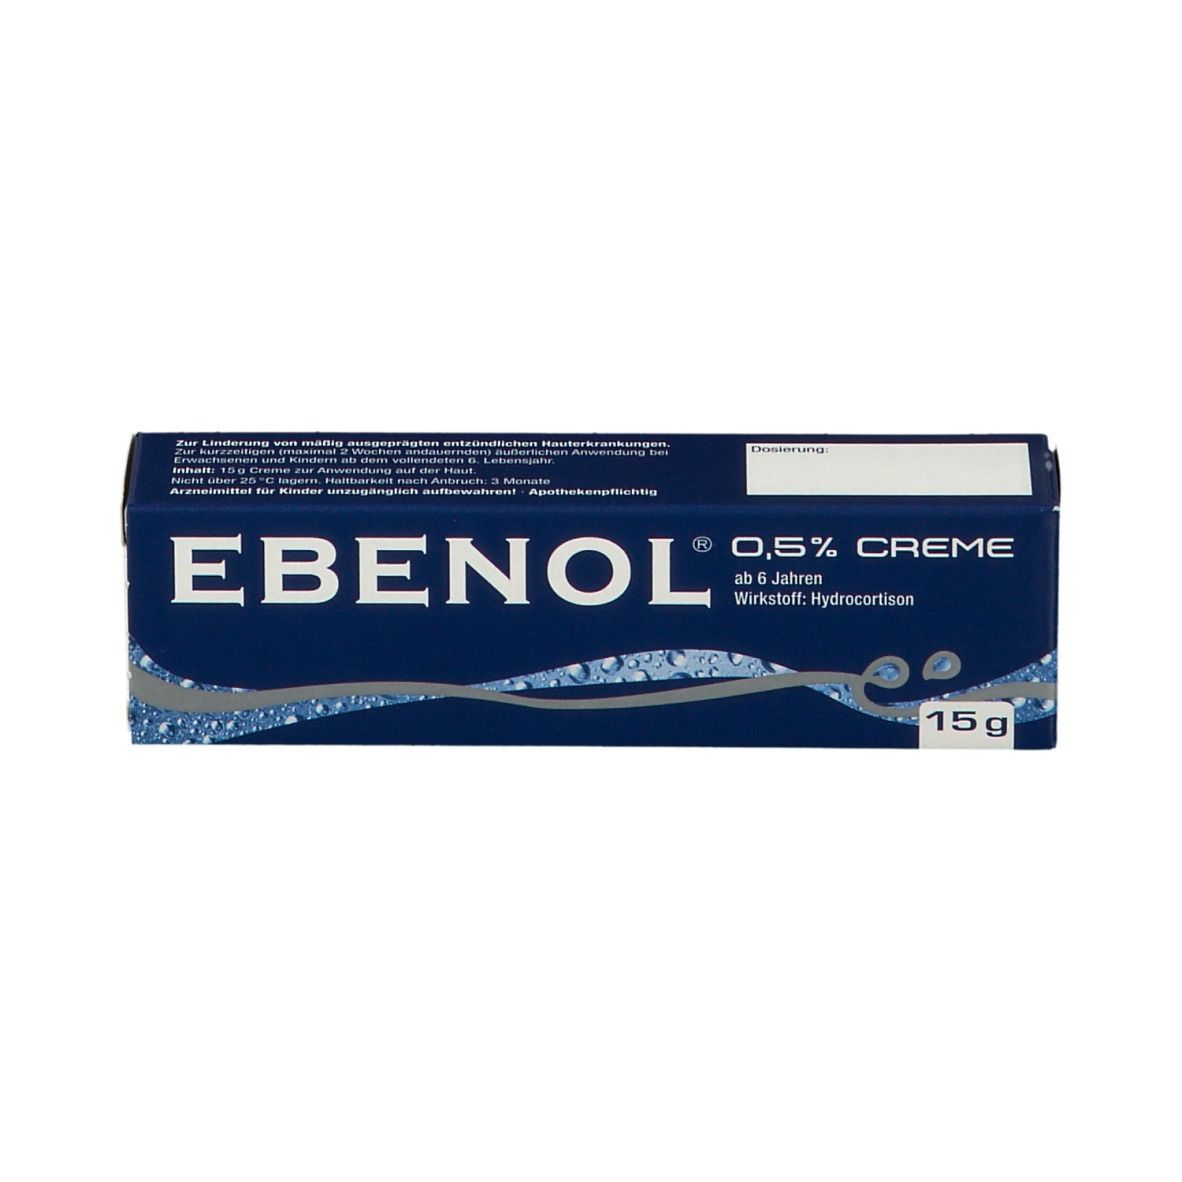 EBENOL® 0,5% Creme